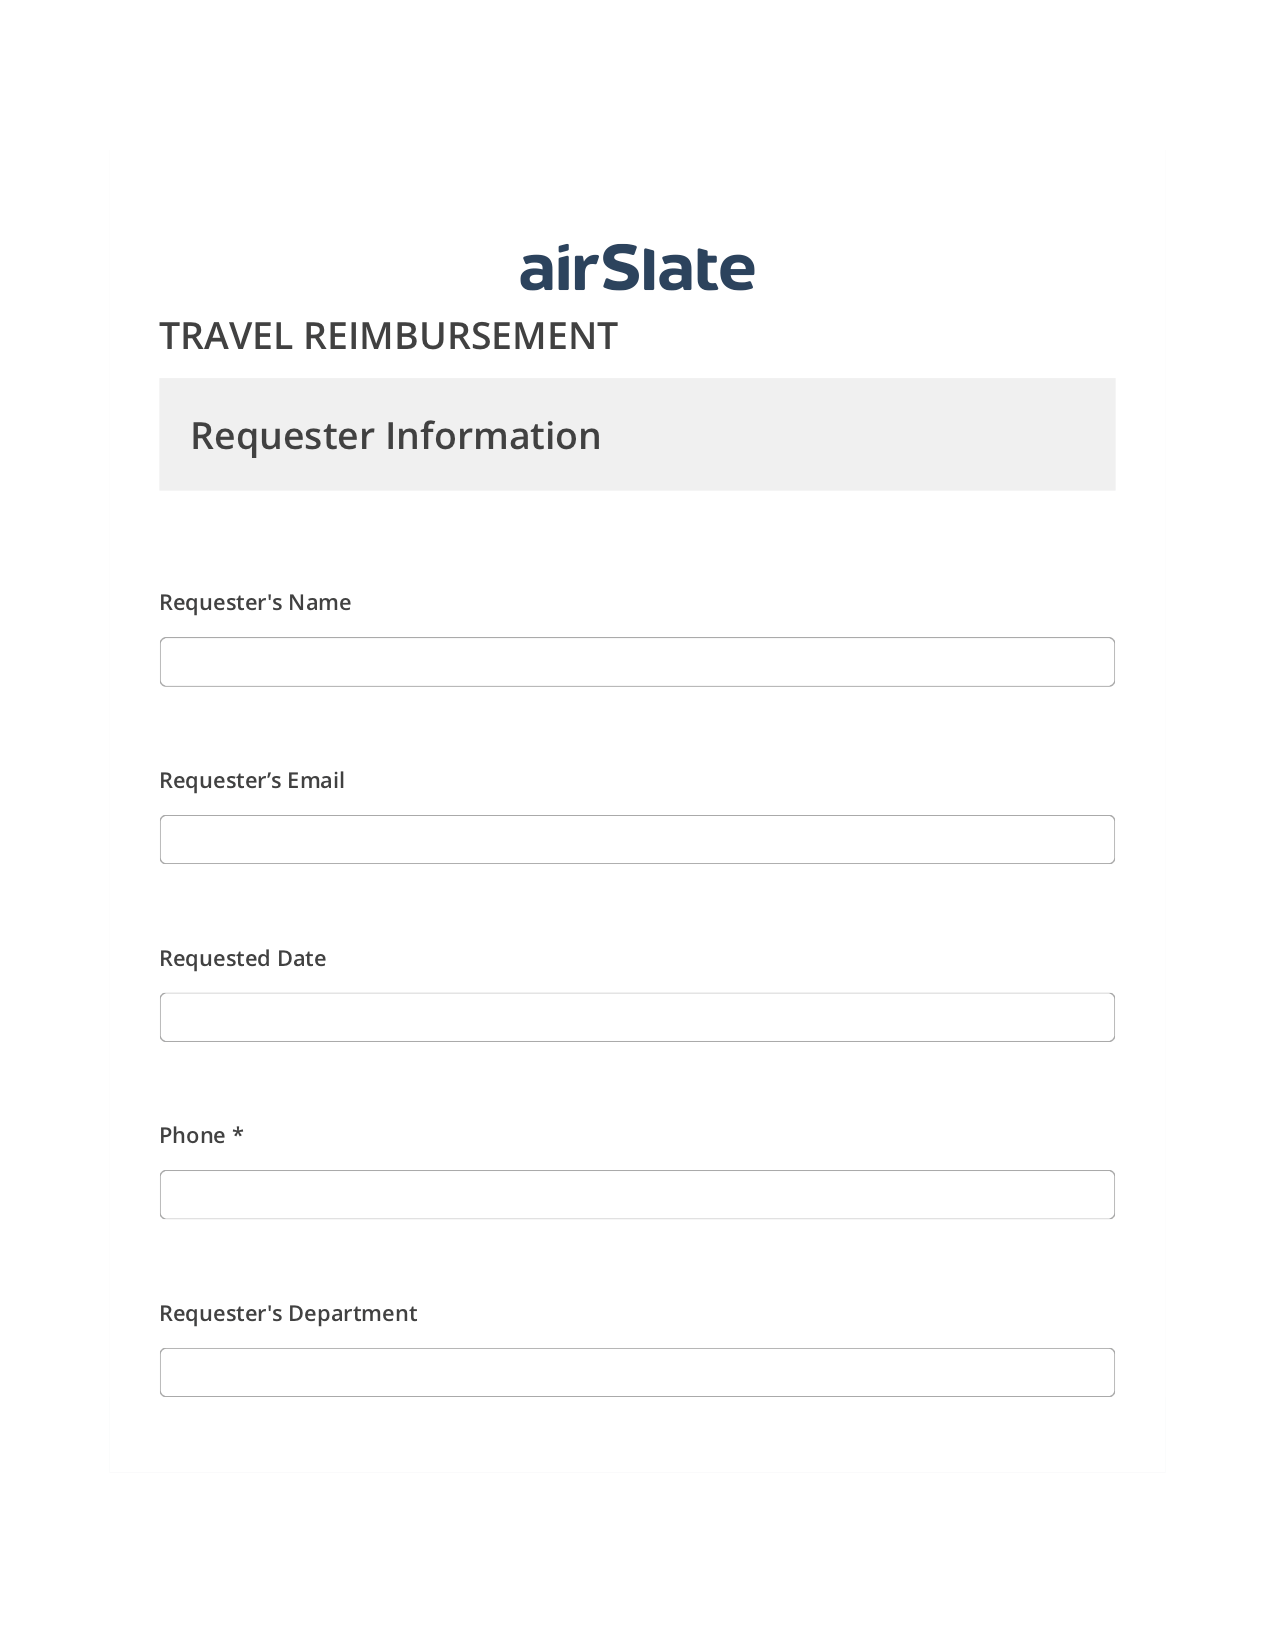 Travel Reimbursement Flow Pre-fill from another Slate Bot